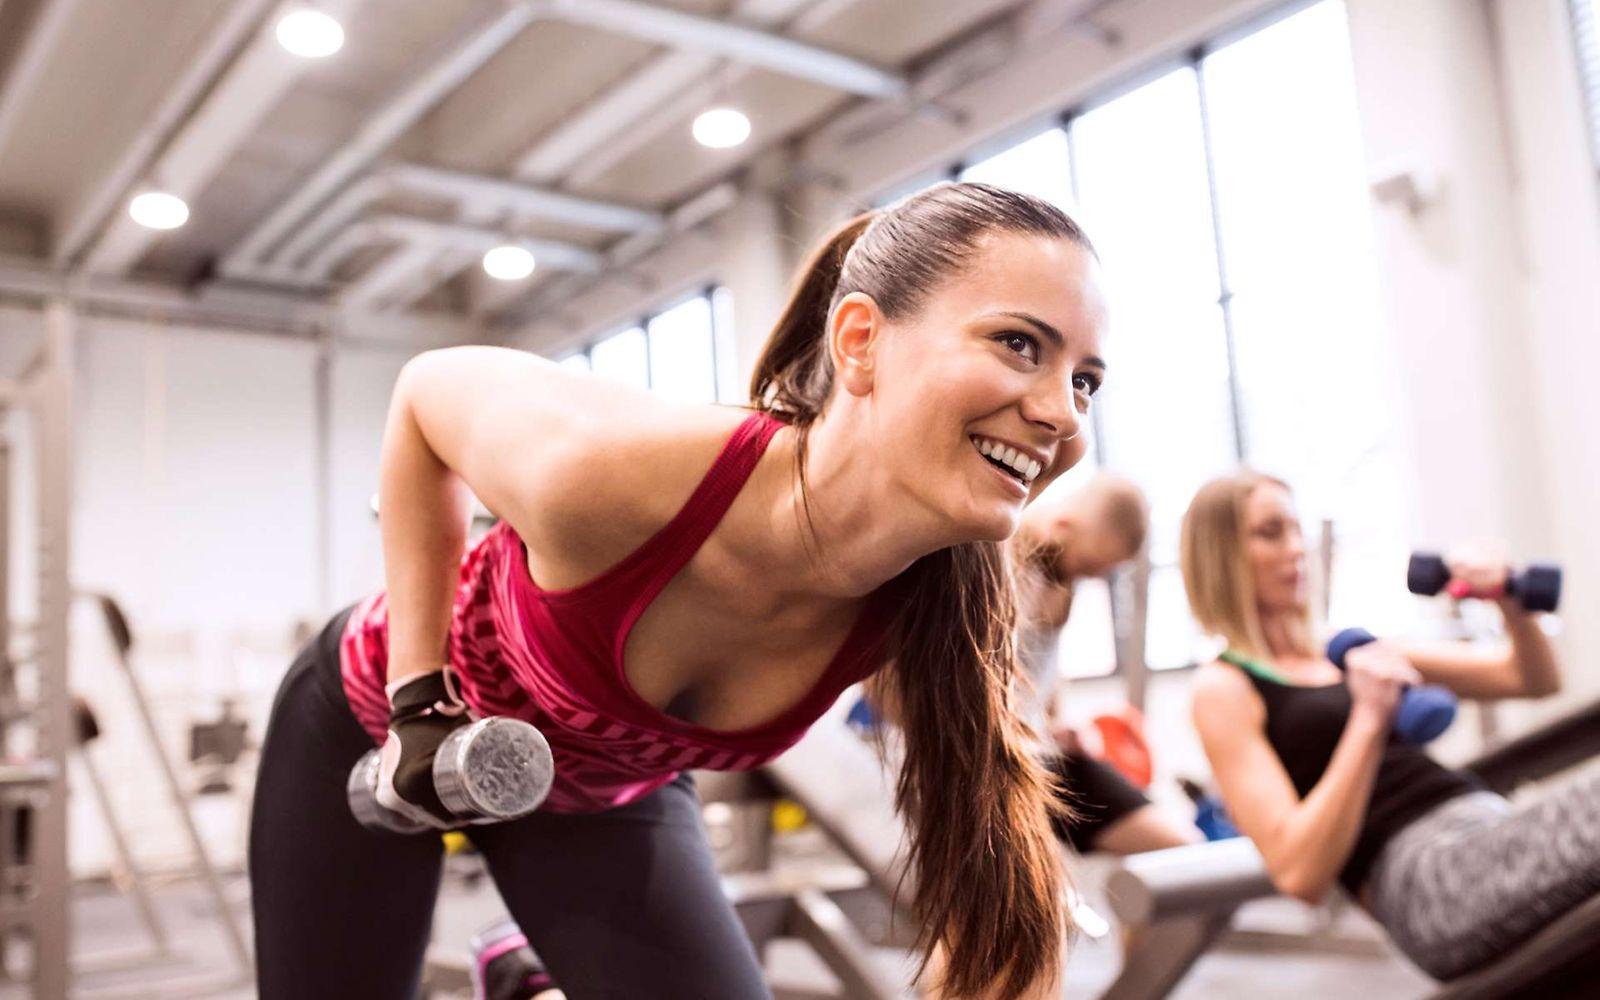 Freude beim Krafttraining: Eine junge Frau trainiert in einem Fitnessstudio mit Hanteln.